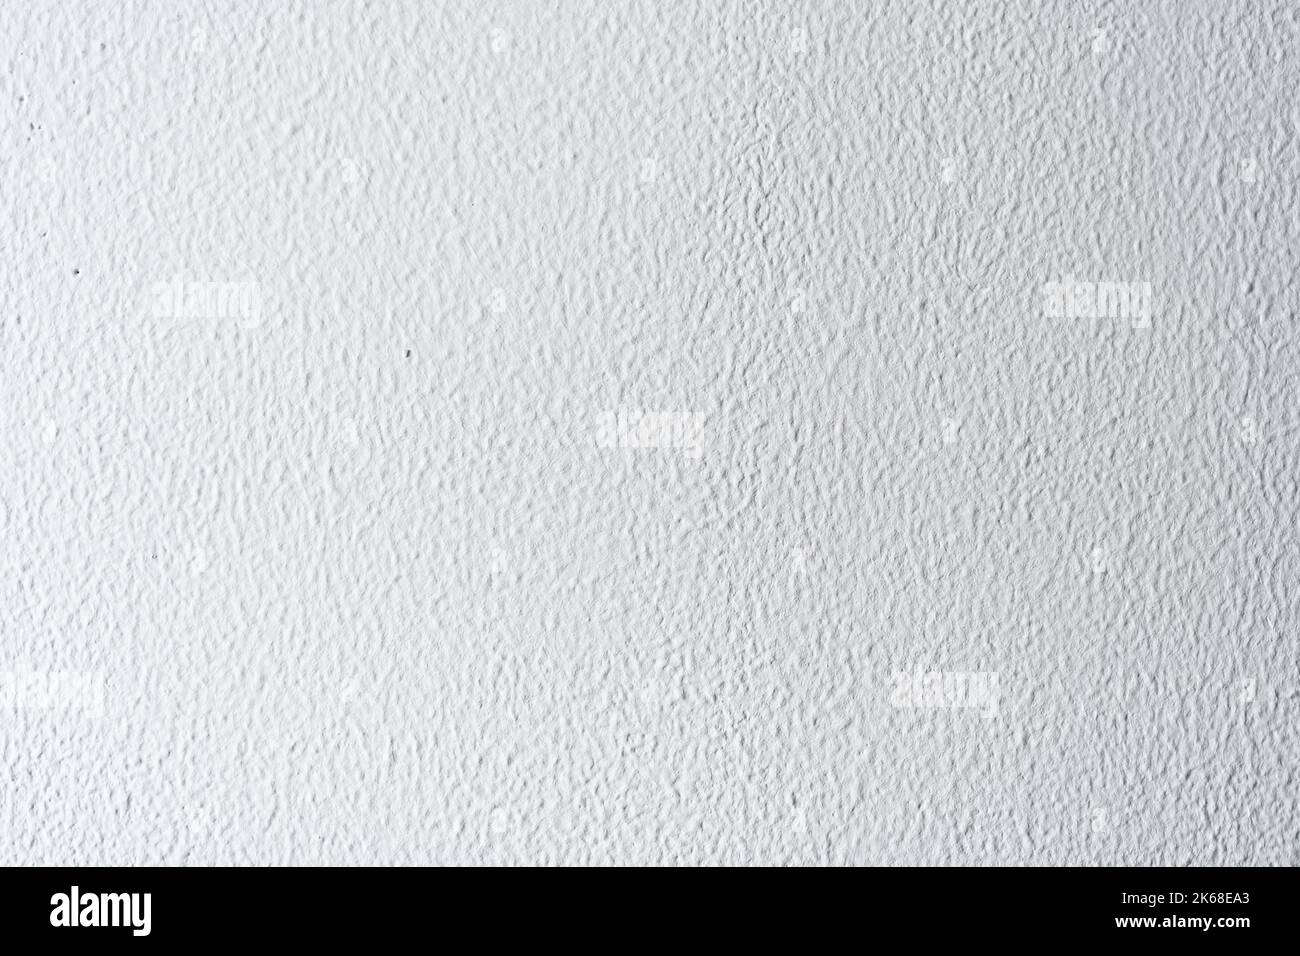 Weiße Wand mit traditionellem spanischen Ausfallschritt-Gemälde. Hintergrundgrafikressource. Stockfoto